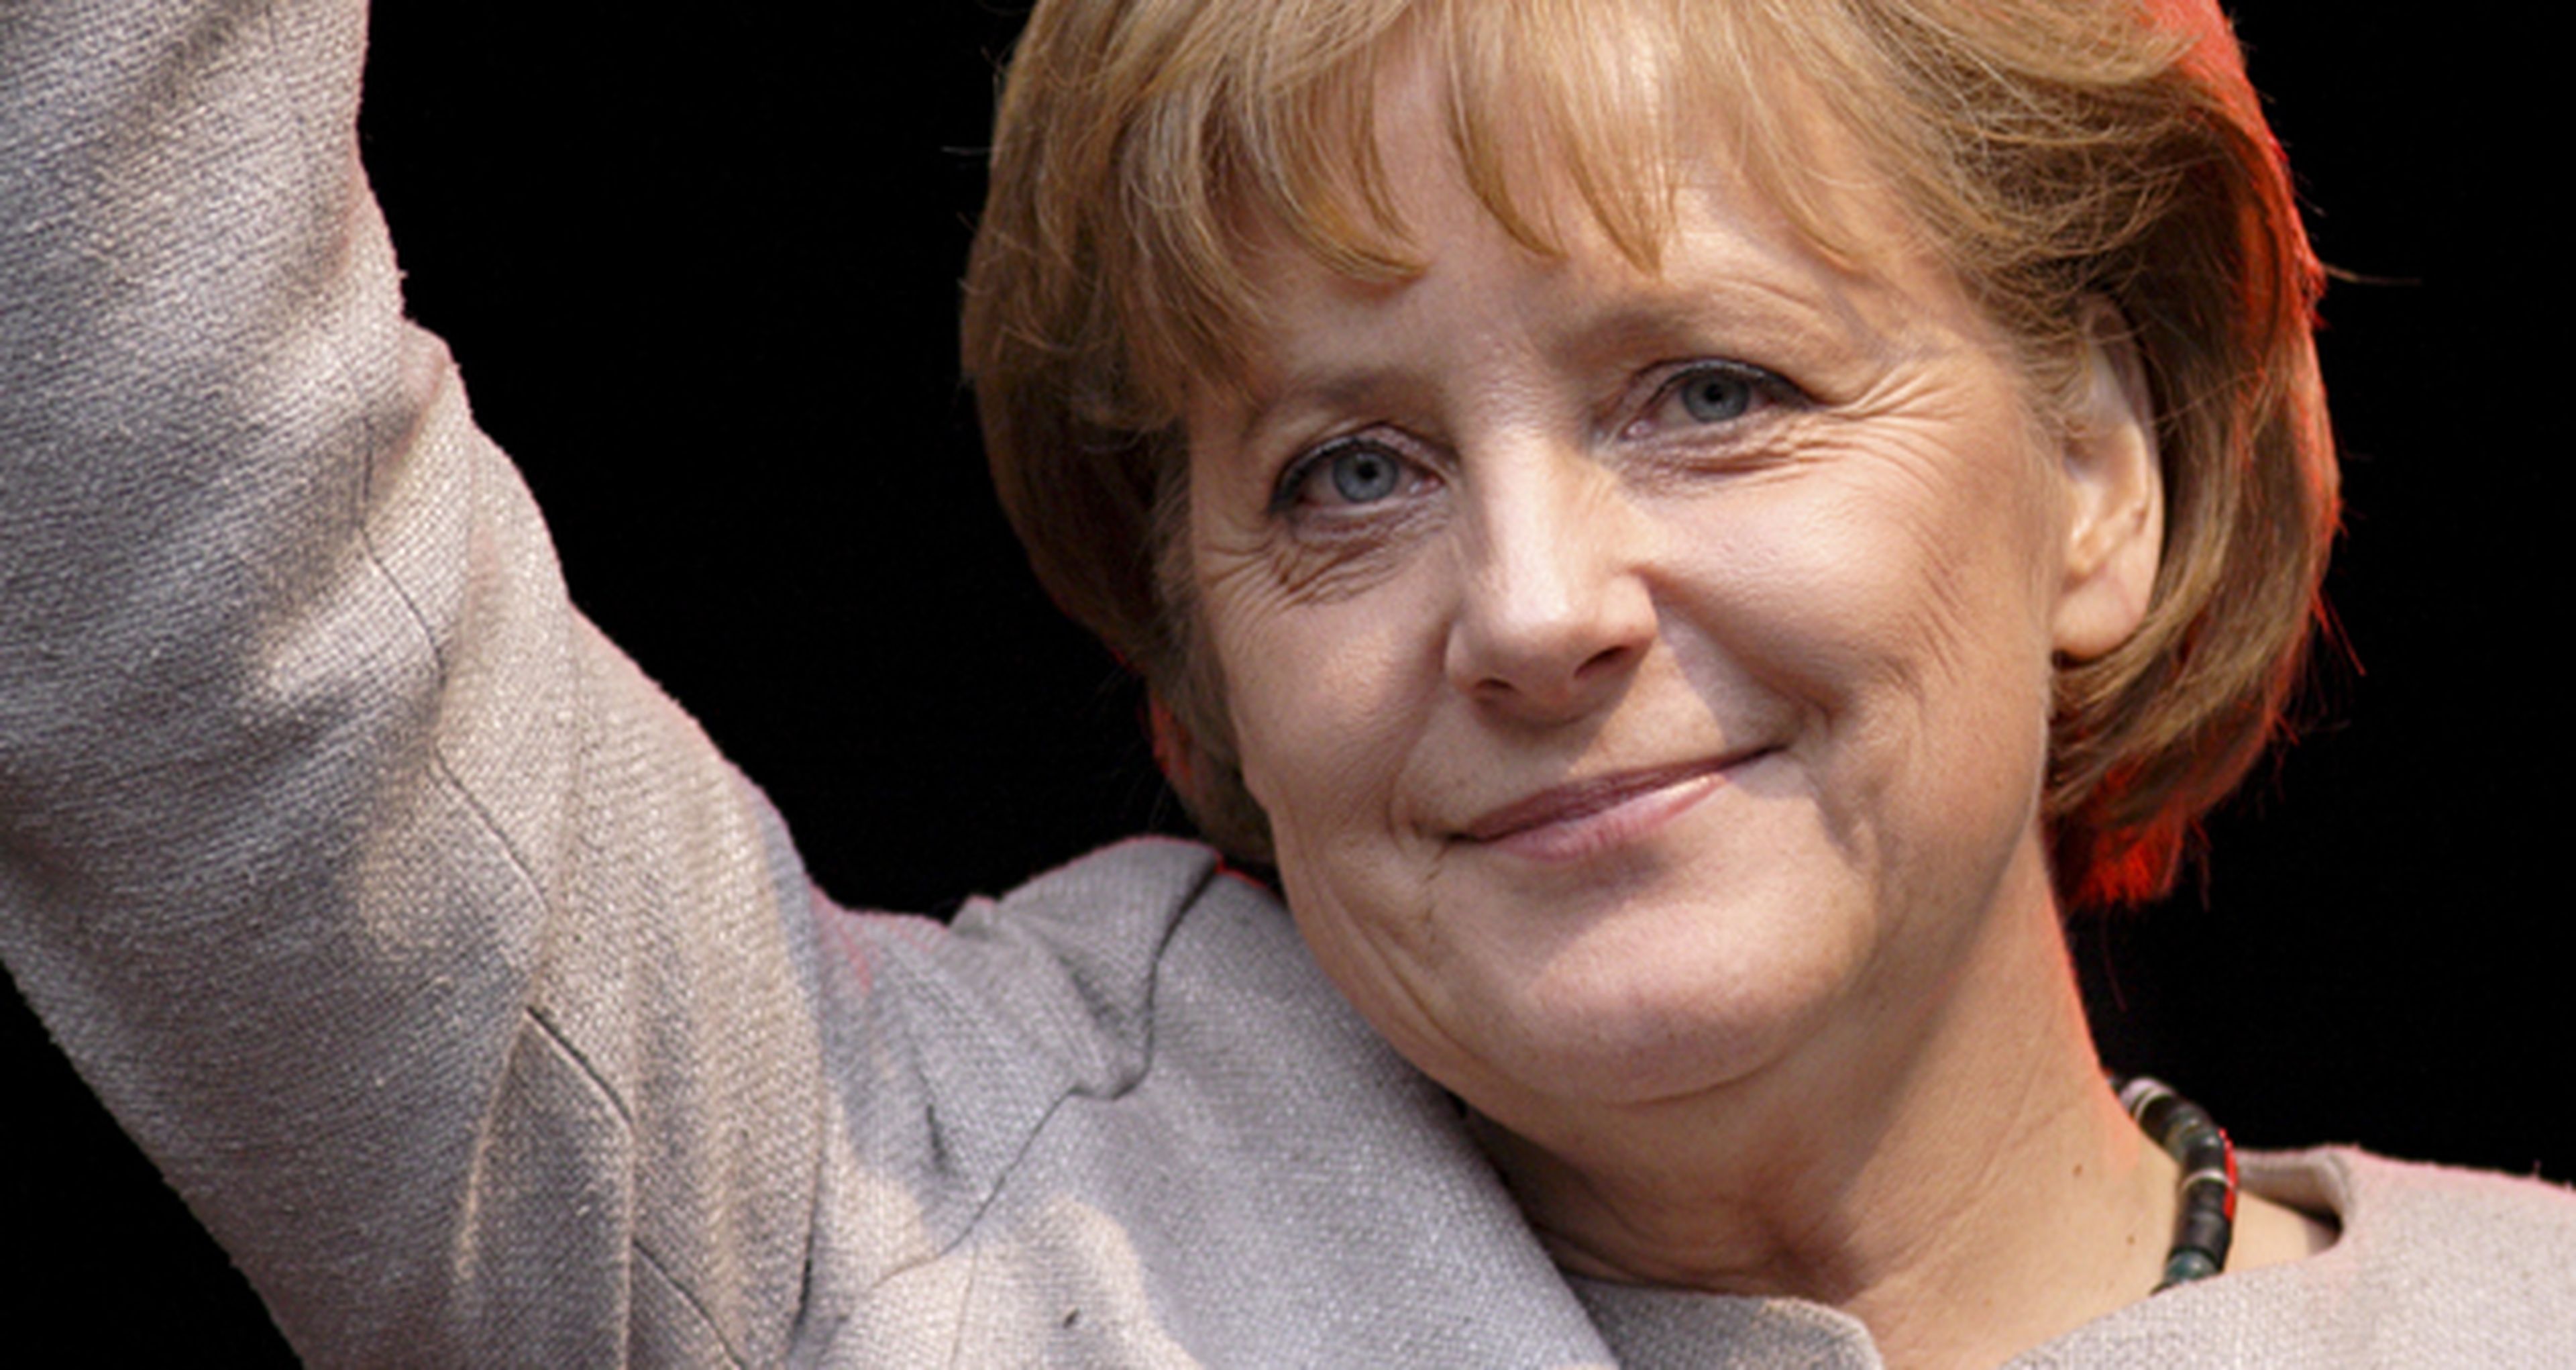 El biopic de Angela Merkel está en marcha, ¿saldrá una peli de miedo?